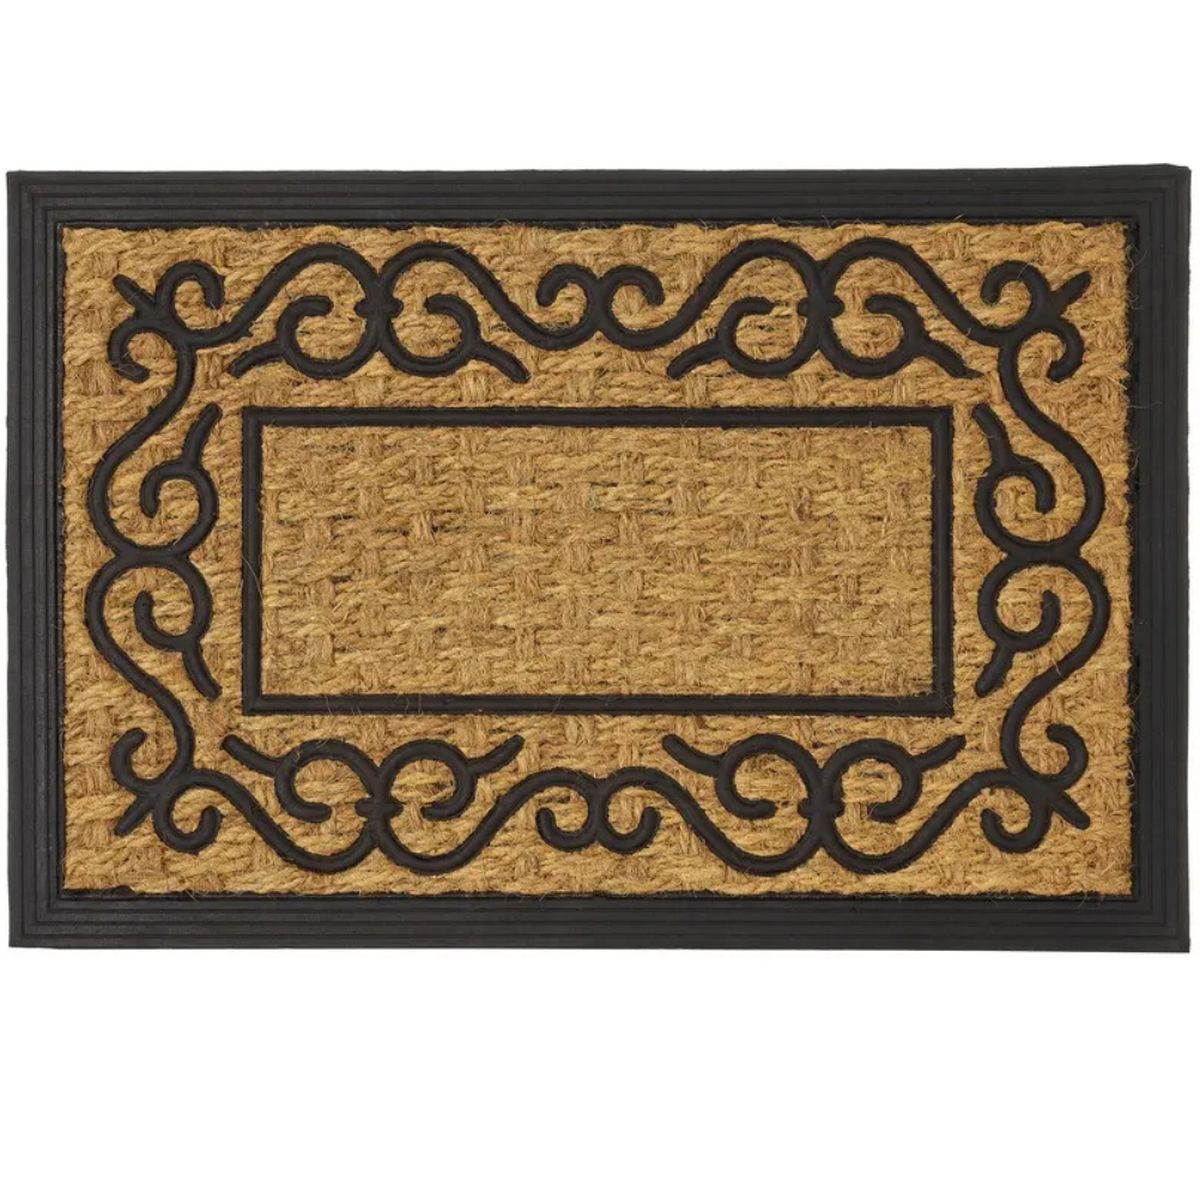 Coconut fibers Doormat - ORLA - 60 cm